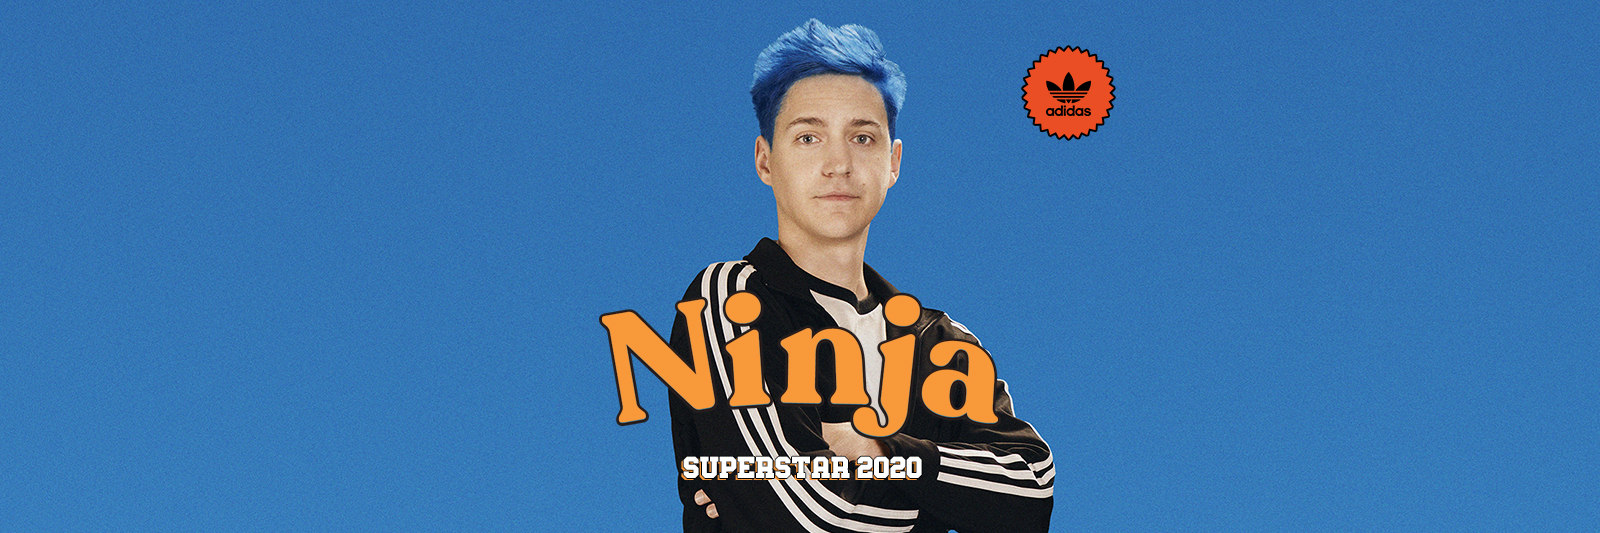 ninja superstars adidas